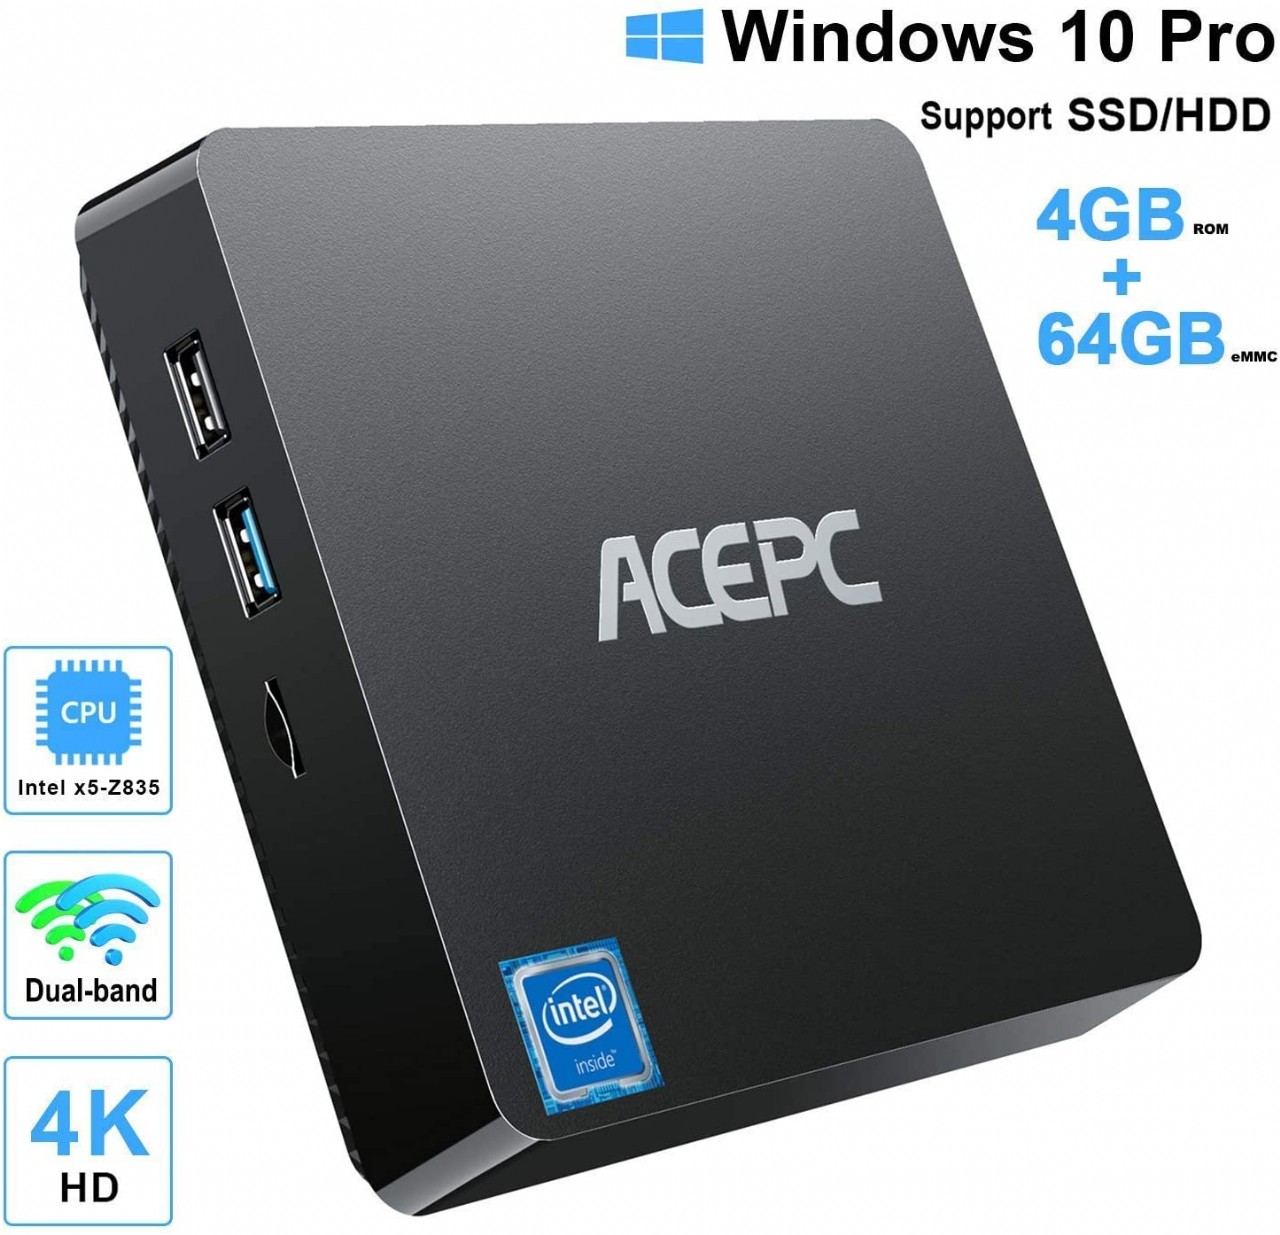 Mini PC Intel Atom Z8350 Windows 10 Pro Mini Computer 4GB DDR 64GB eMMC,Support 4K HD,2.4G/5G WiFi